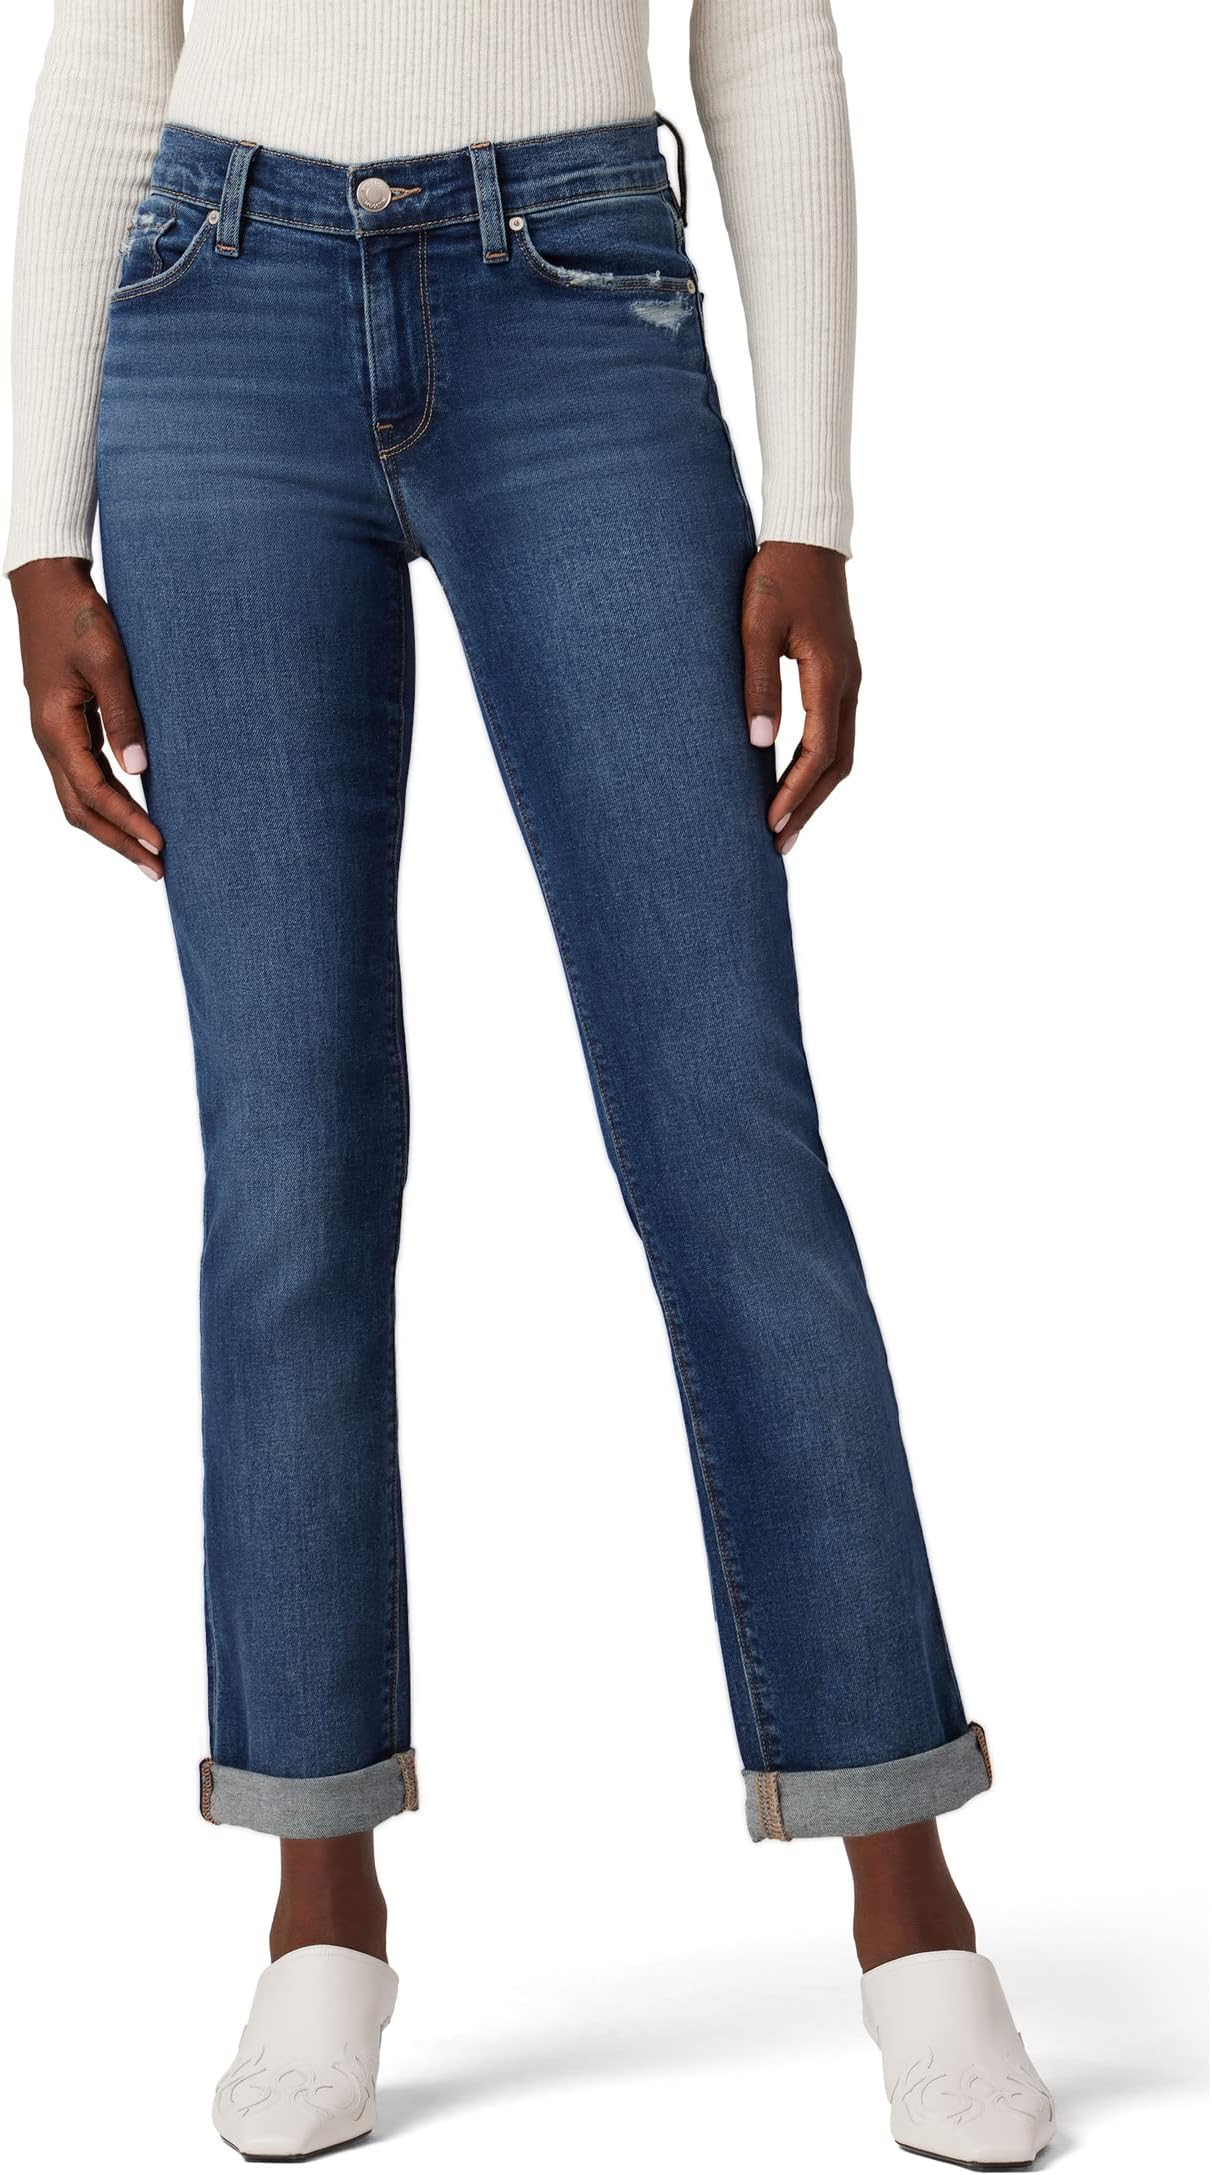 Джинсы Nico Mid-Rise Straight Ankle (w/ Rolled Hem) in Elemental Hudson Jeans, цвет Elemental